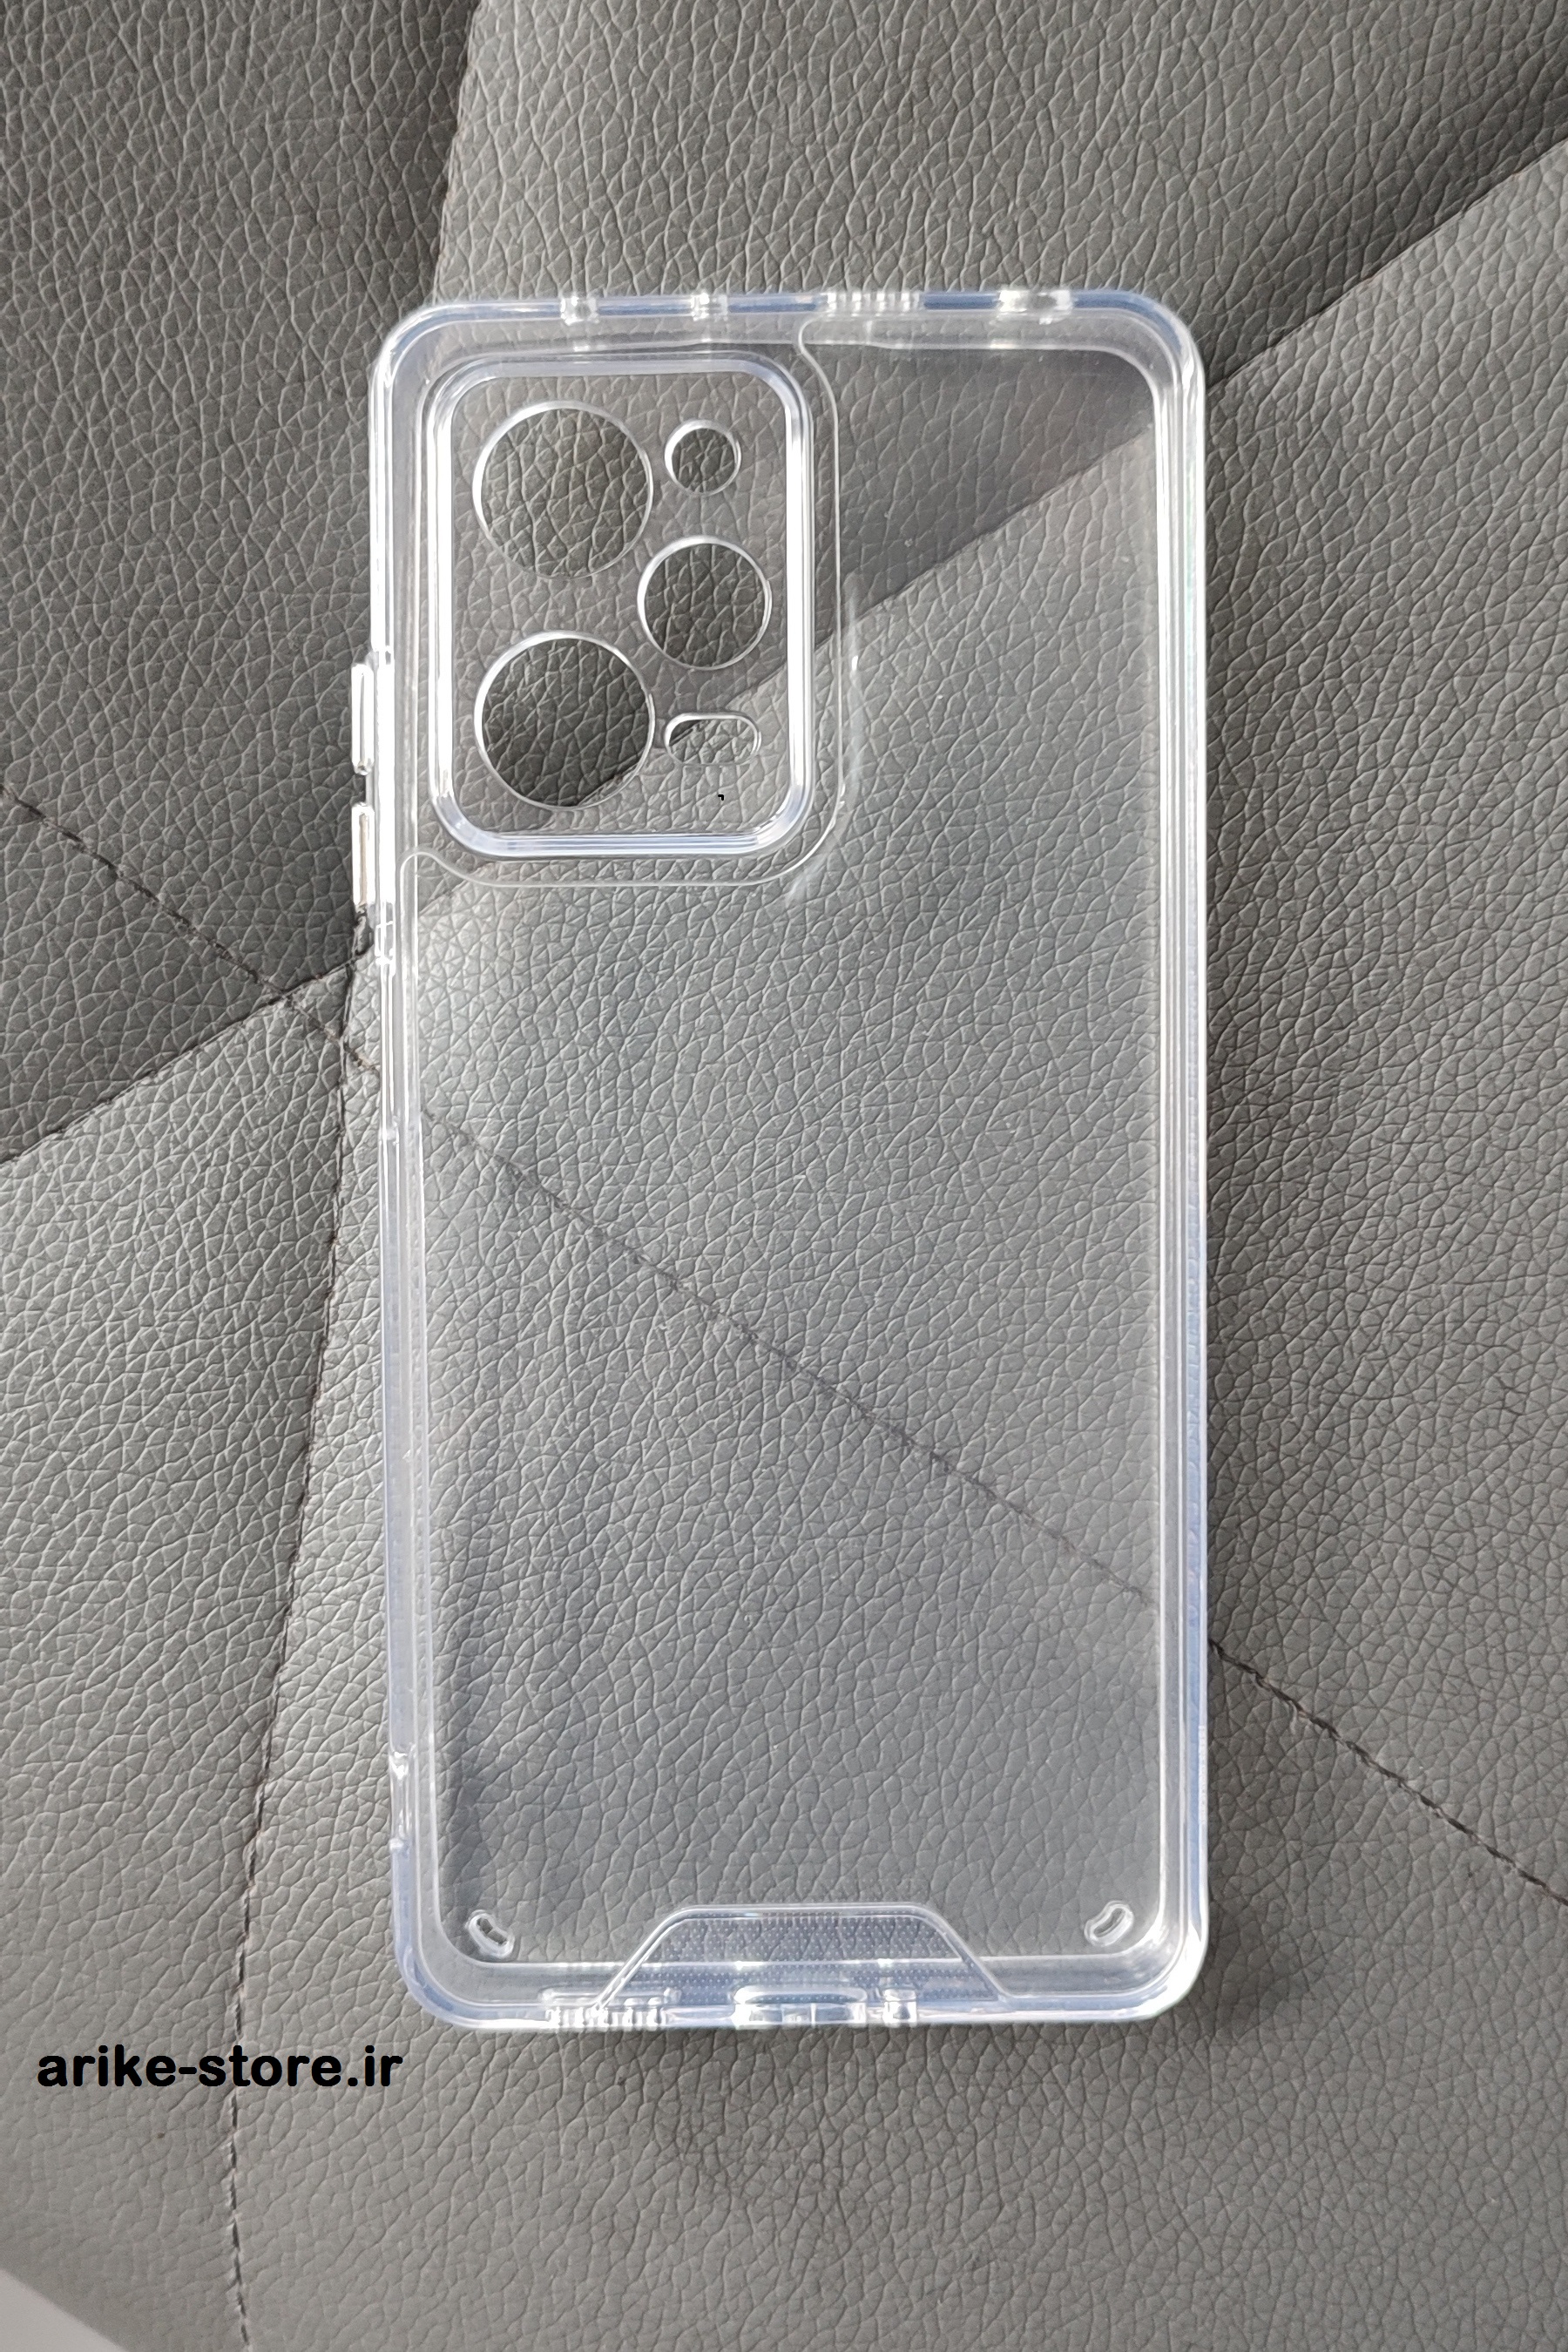 کاور قاب گوشی موبایل شیائومی note11pro مدل شفاف اسپیس(عکس ها جهت نمونه برای مشاهده مدل محصول میباشند)